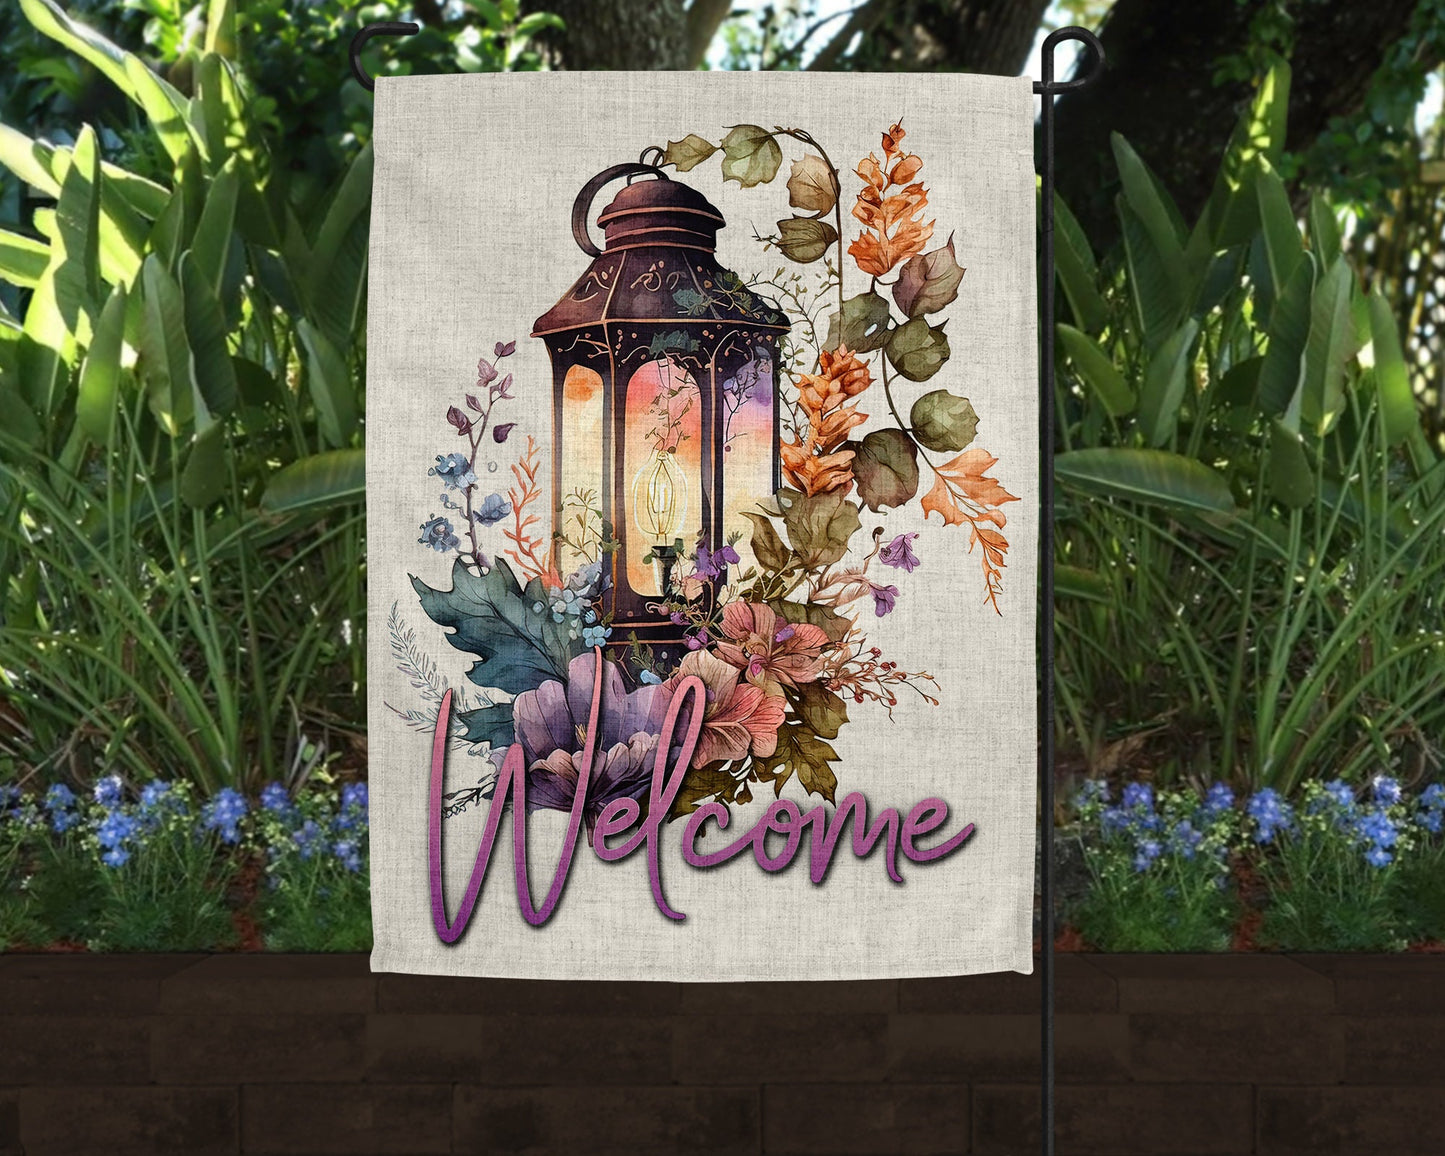 Welcome Floral Lantern Art Linen Garden Flag|Outdoor Decor|Garden Decor|Home Decor